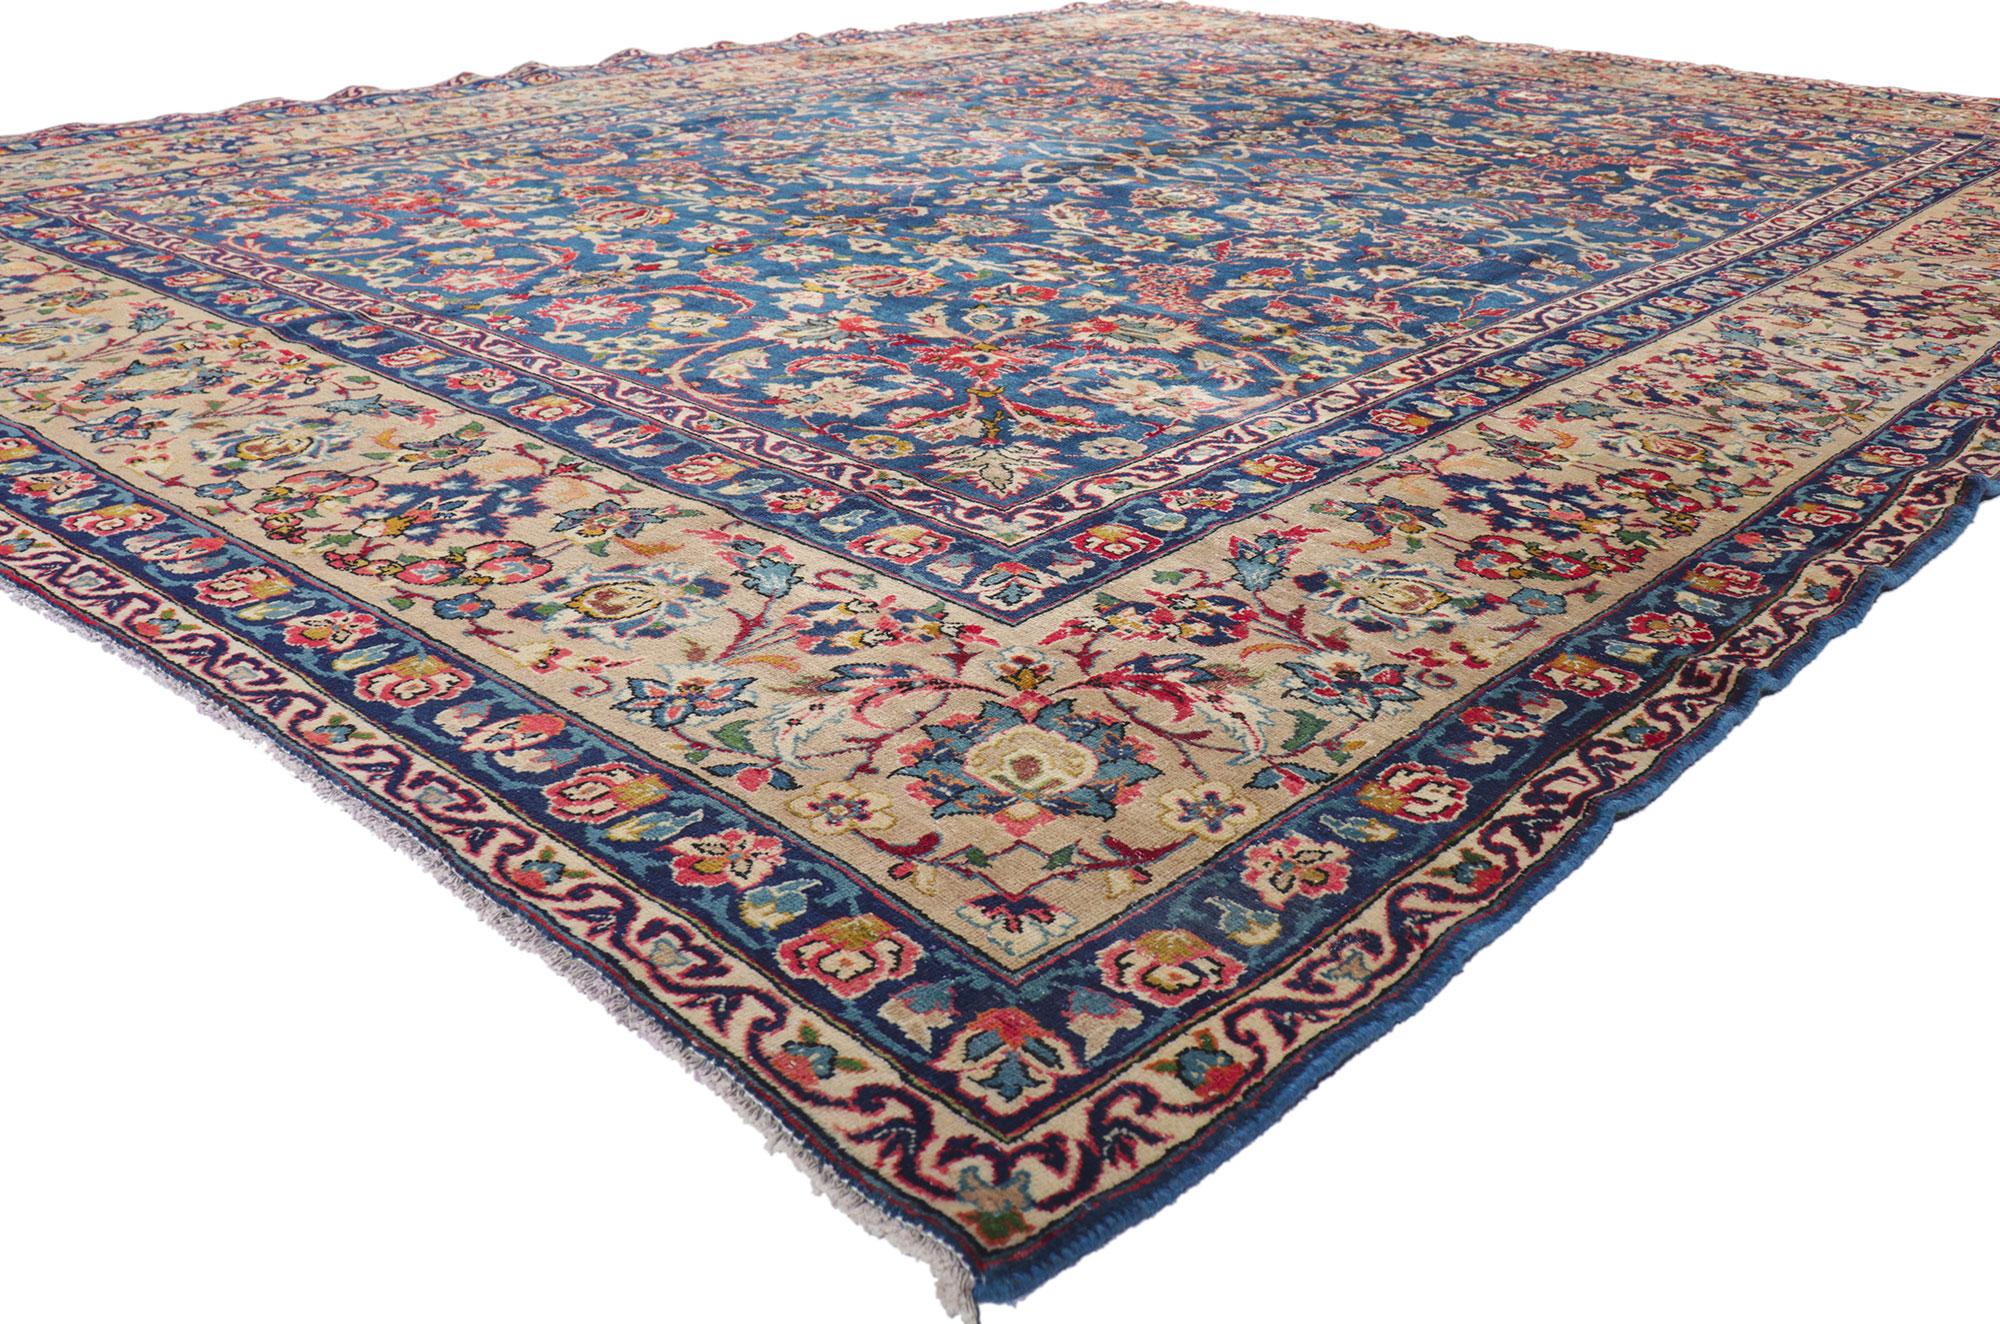 61207 Tapis Persan Vintage Isfahan, 09'10 x 13'00.
Avec sa beauté sans effort et son design intemporel, ce tapis persan vintage Isfahan en laine noué à la main est prêt à impressionner. Le champ bleu abrasé présente un motif botanique à l'infini